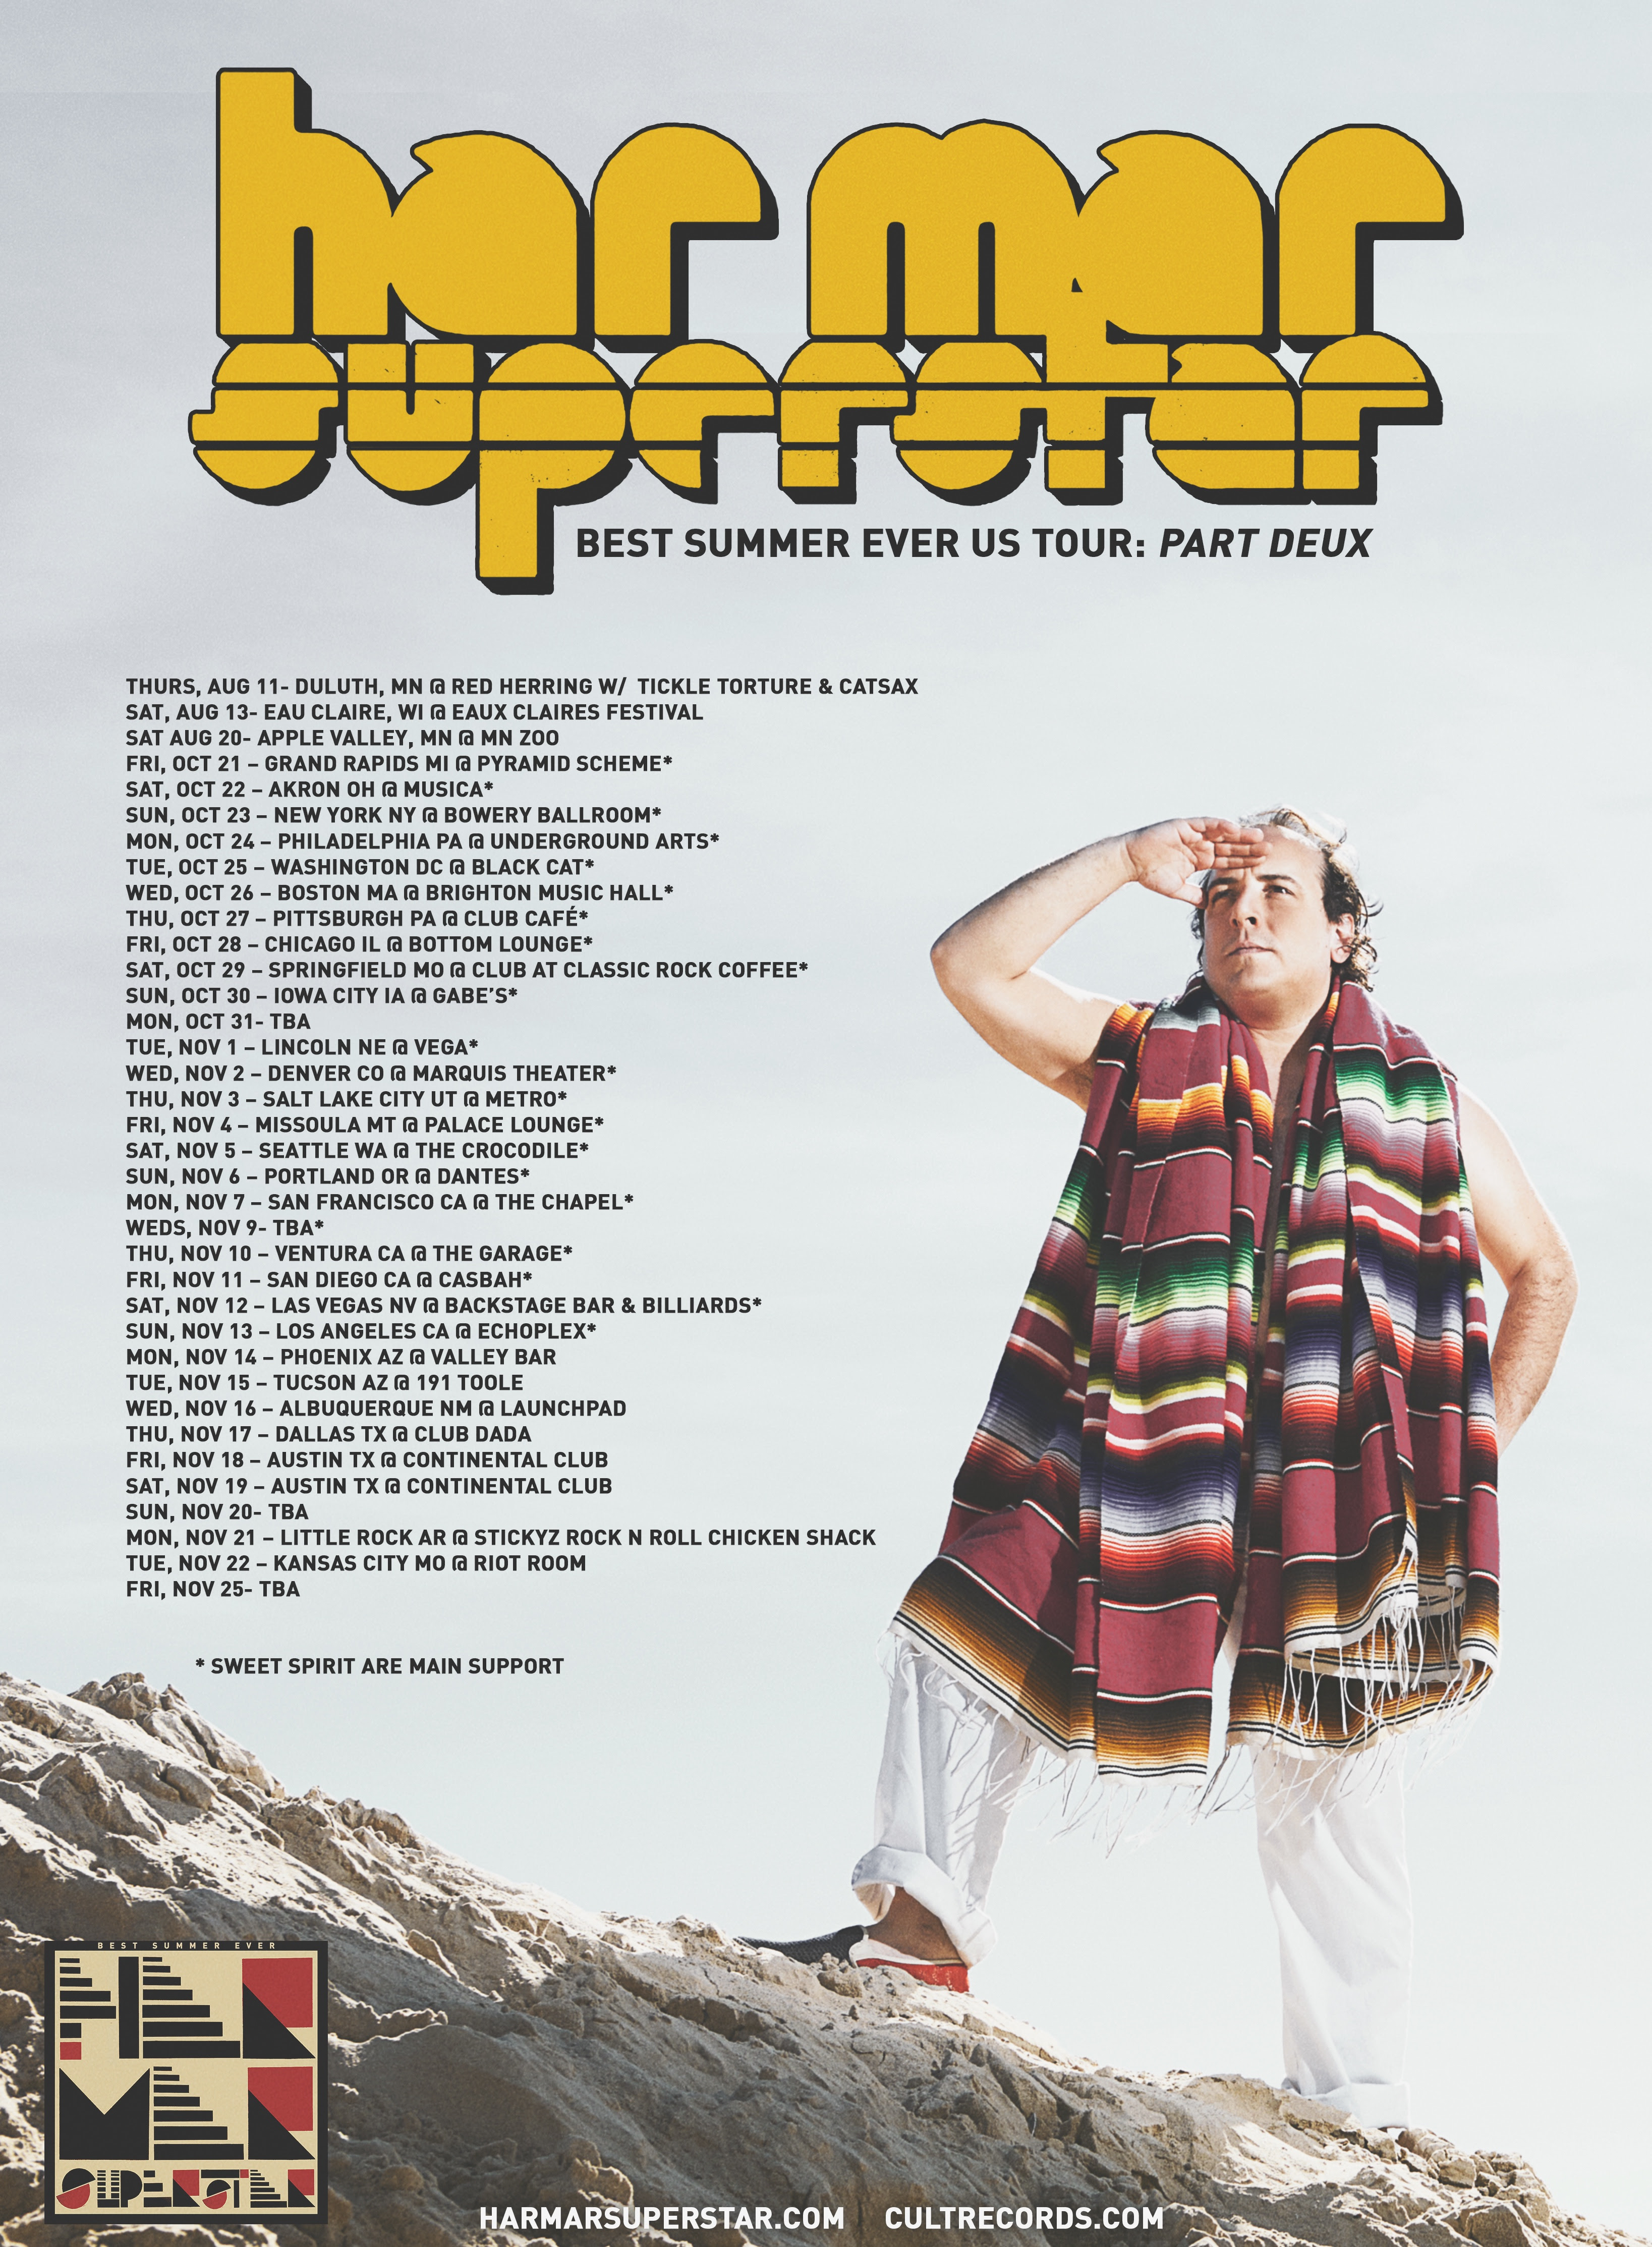 Har Mar Superstar announces 'Best Summer Ever US Tour: Part Deux'